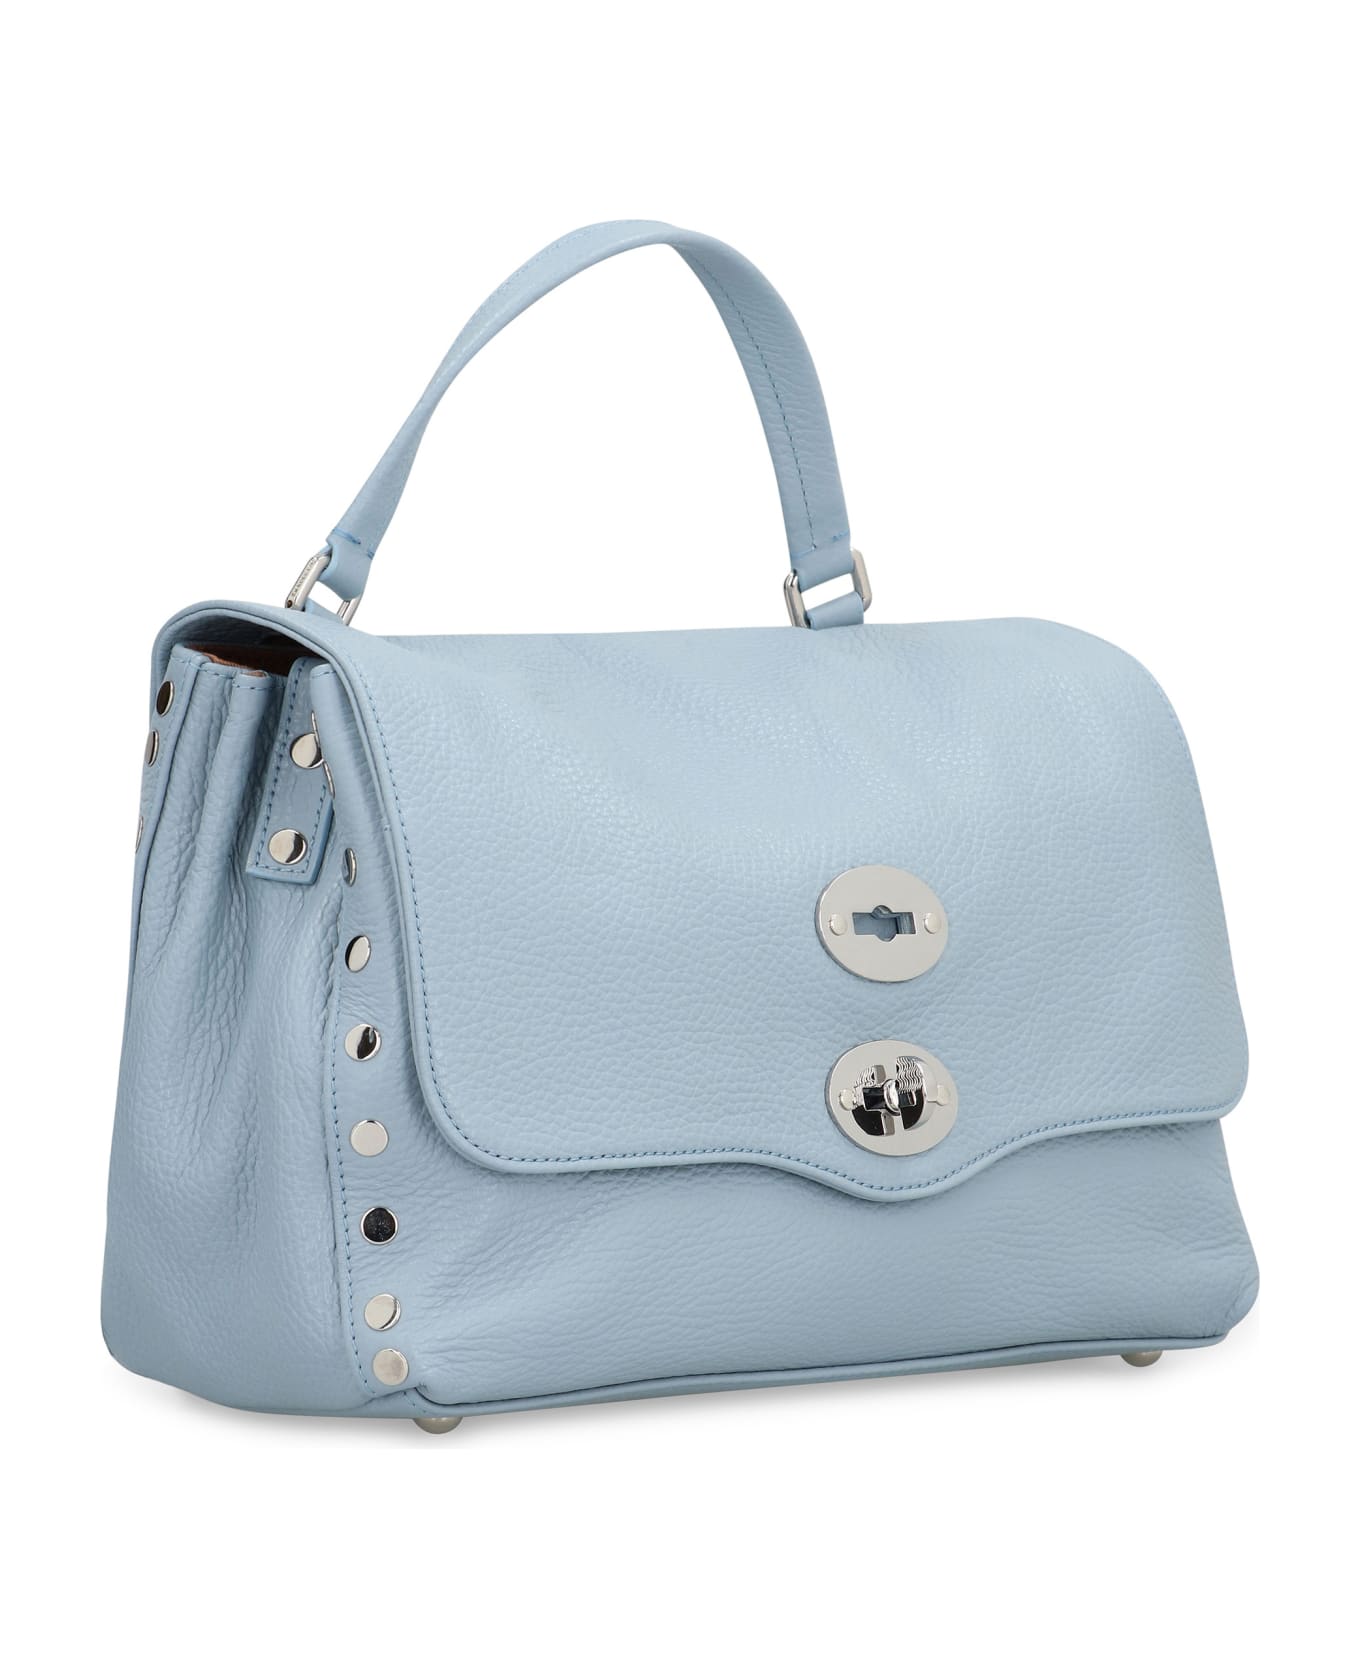 Zanellato Postina S Leather Handbag - Light Blue